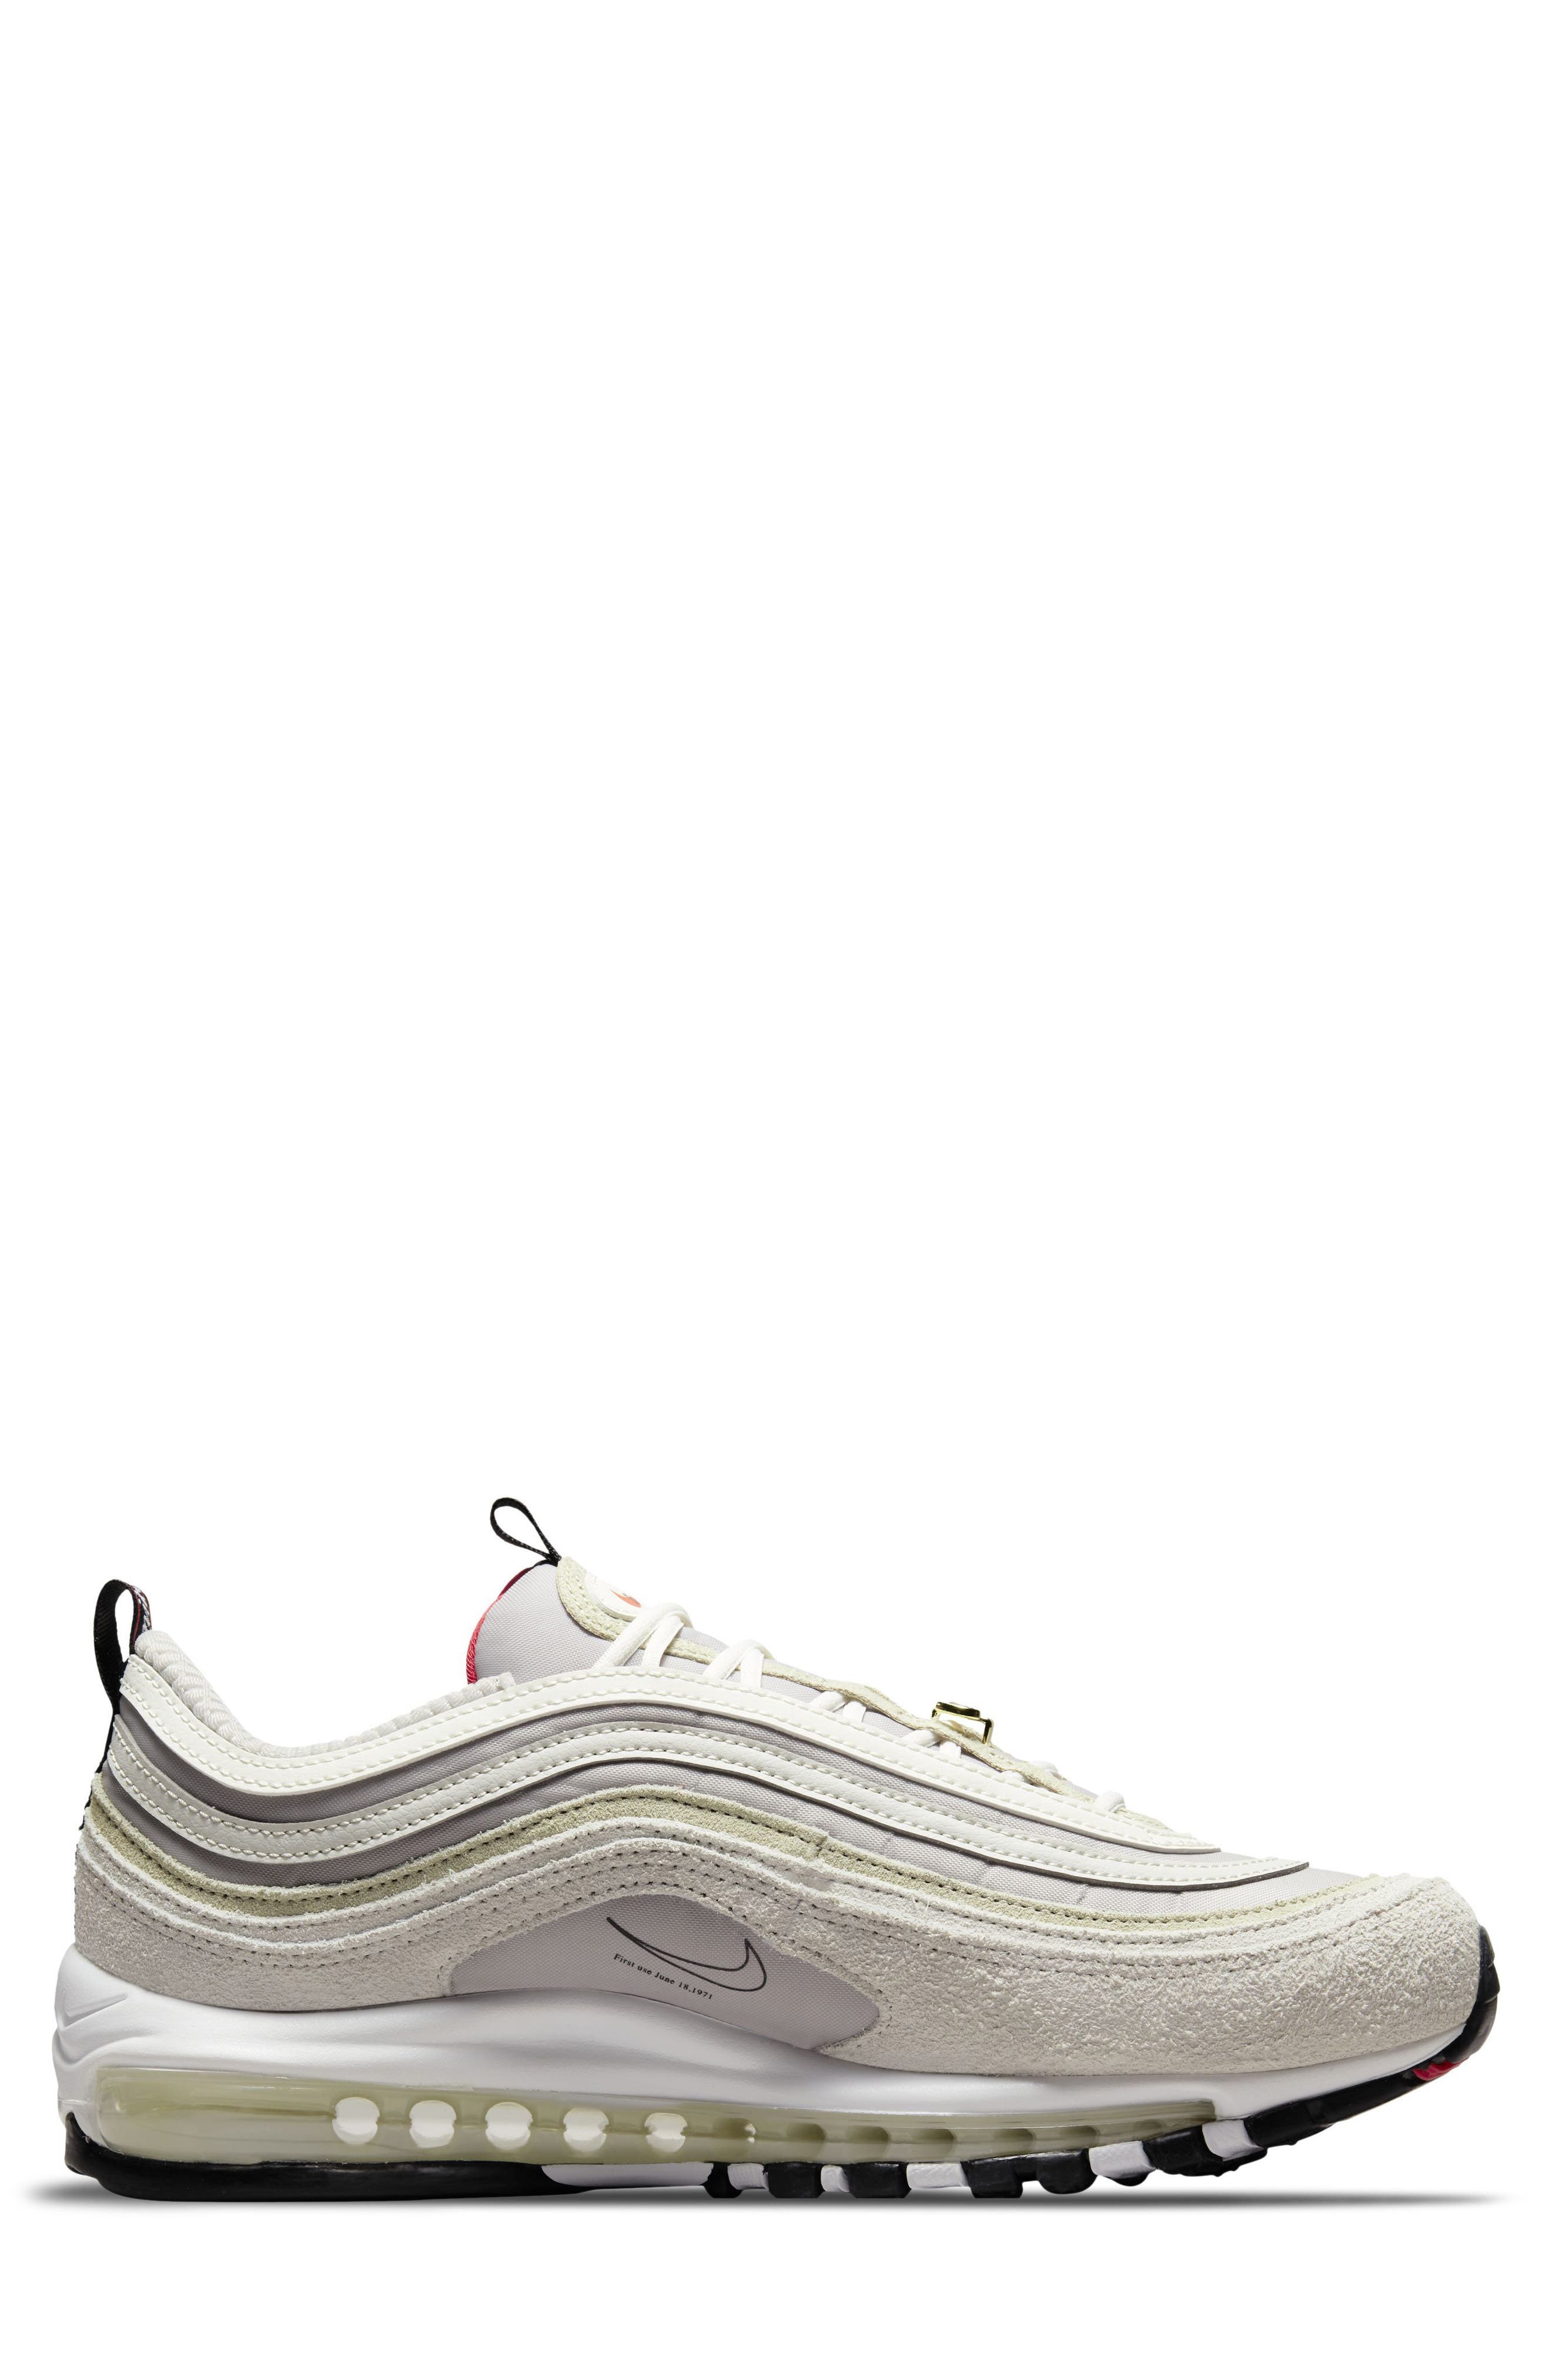 Nike Mens Air Max 97 SE Running Shoes (8.5)